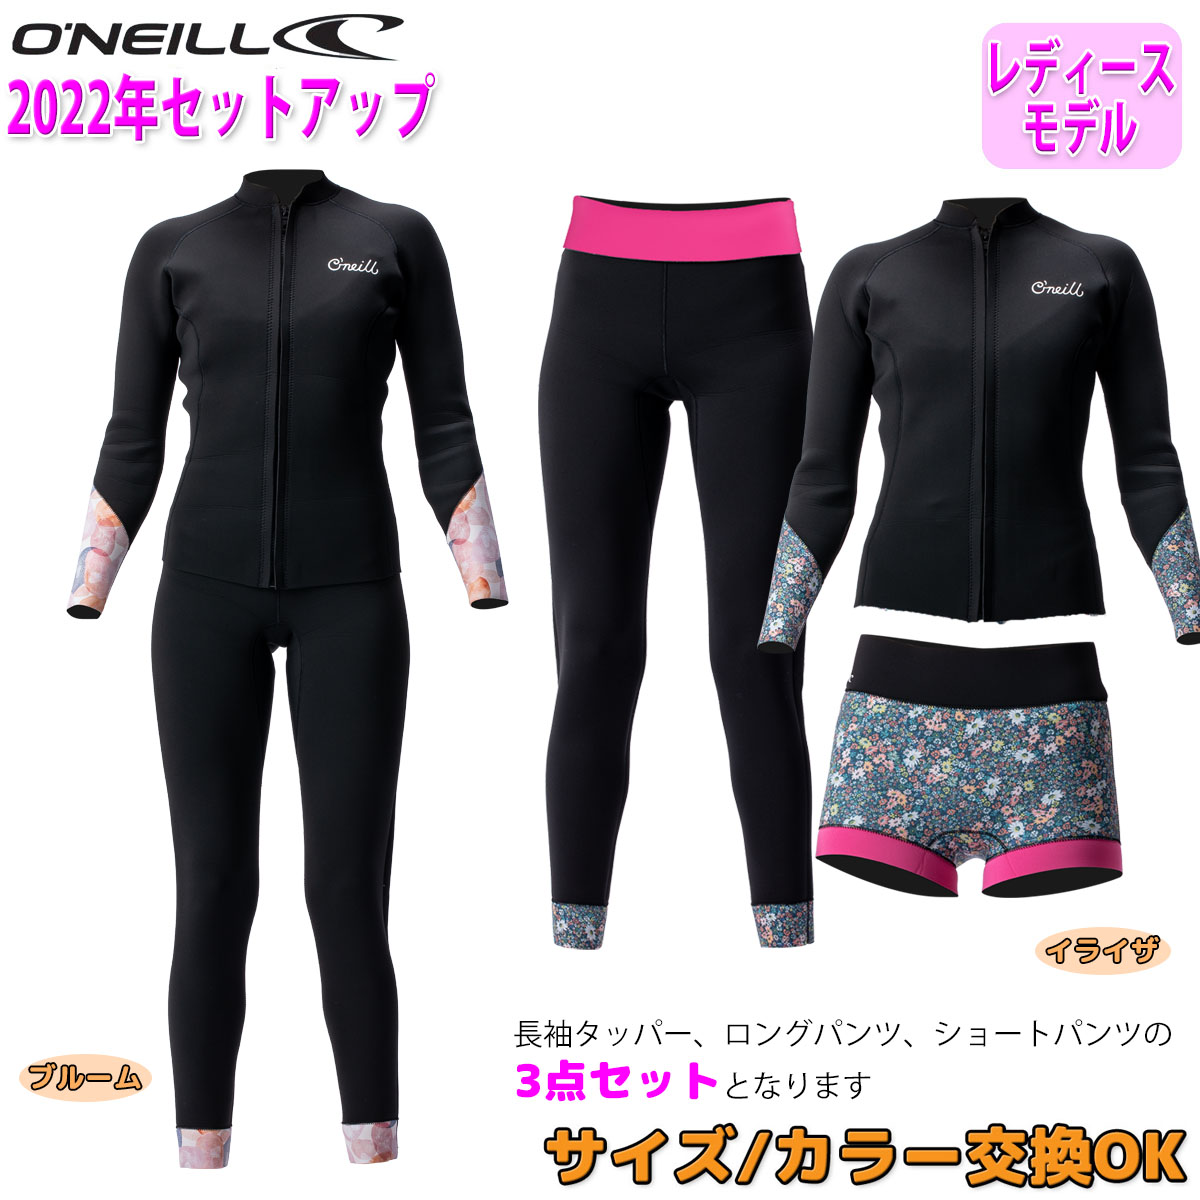 11055円 憧れの オニール ウェットスーツ レディース スプリング サーフィン Oneill Wetsuits